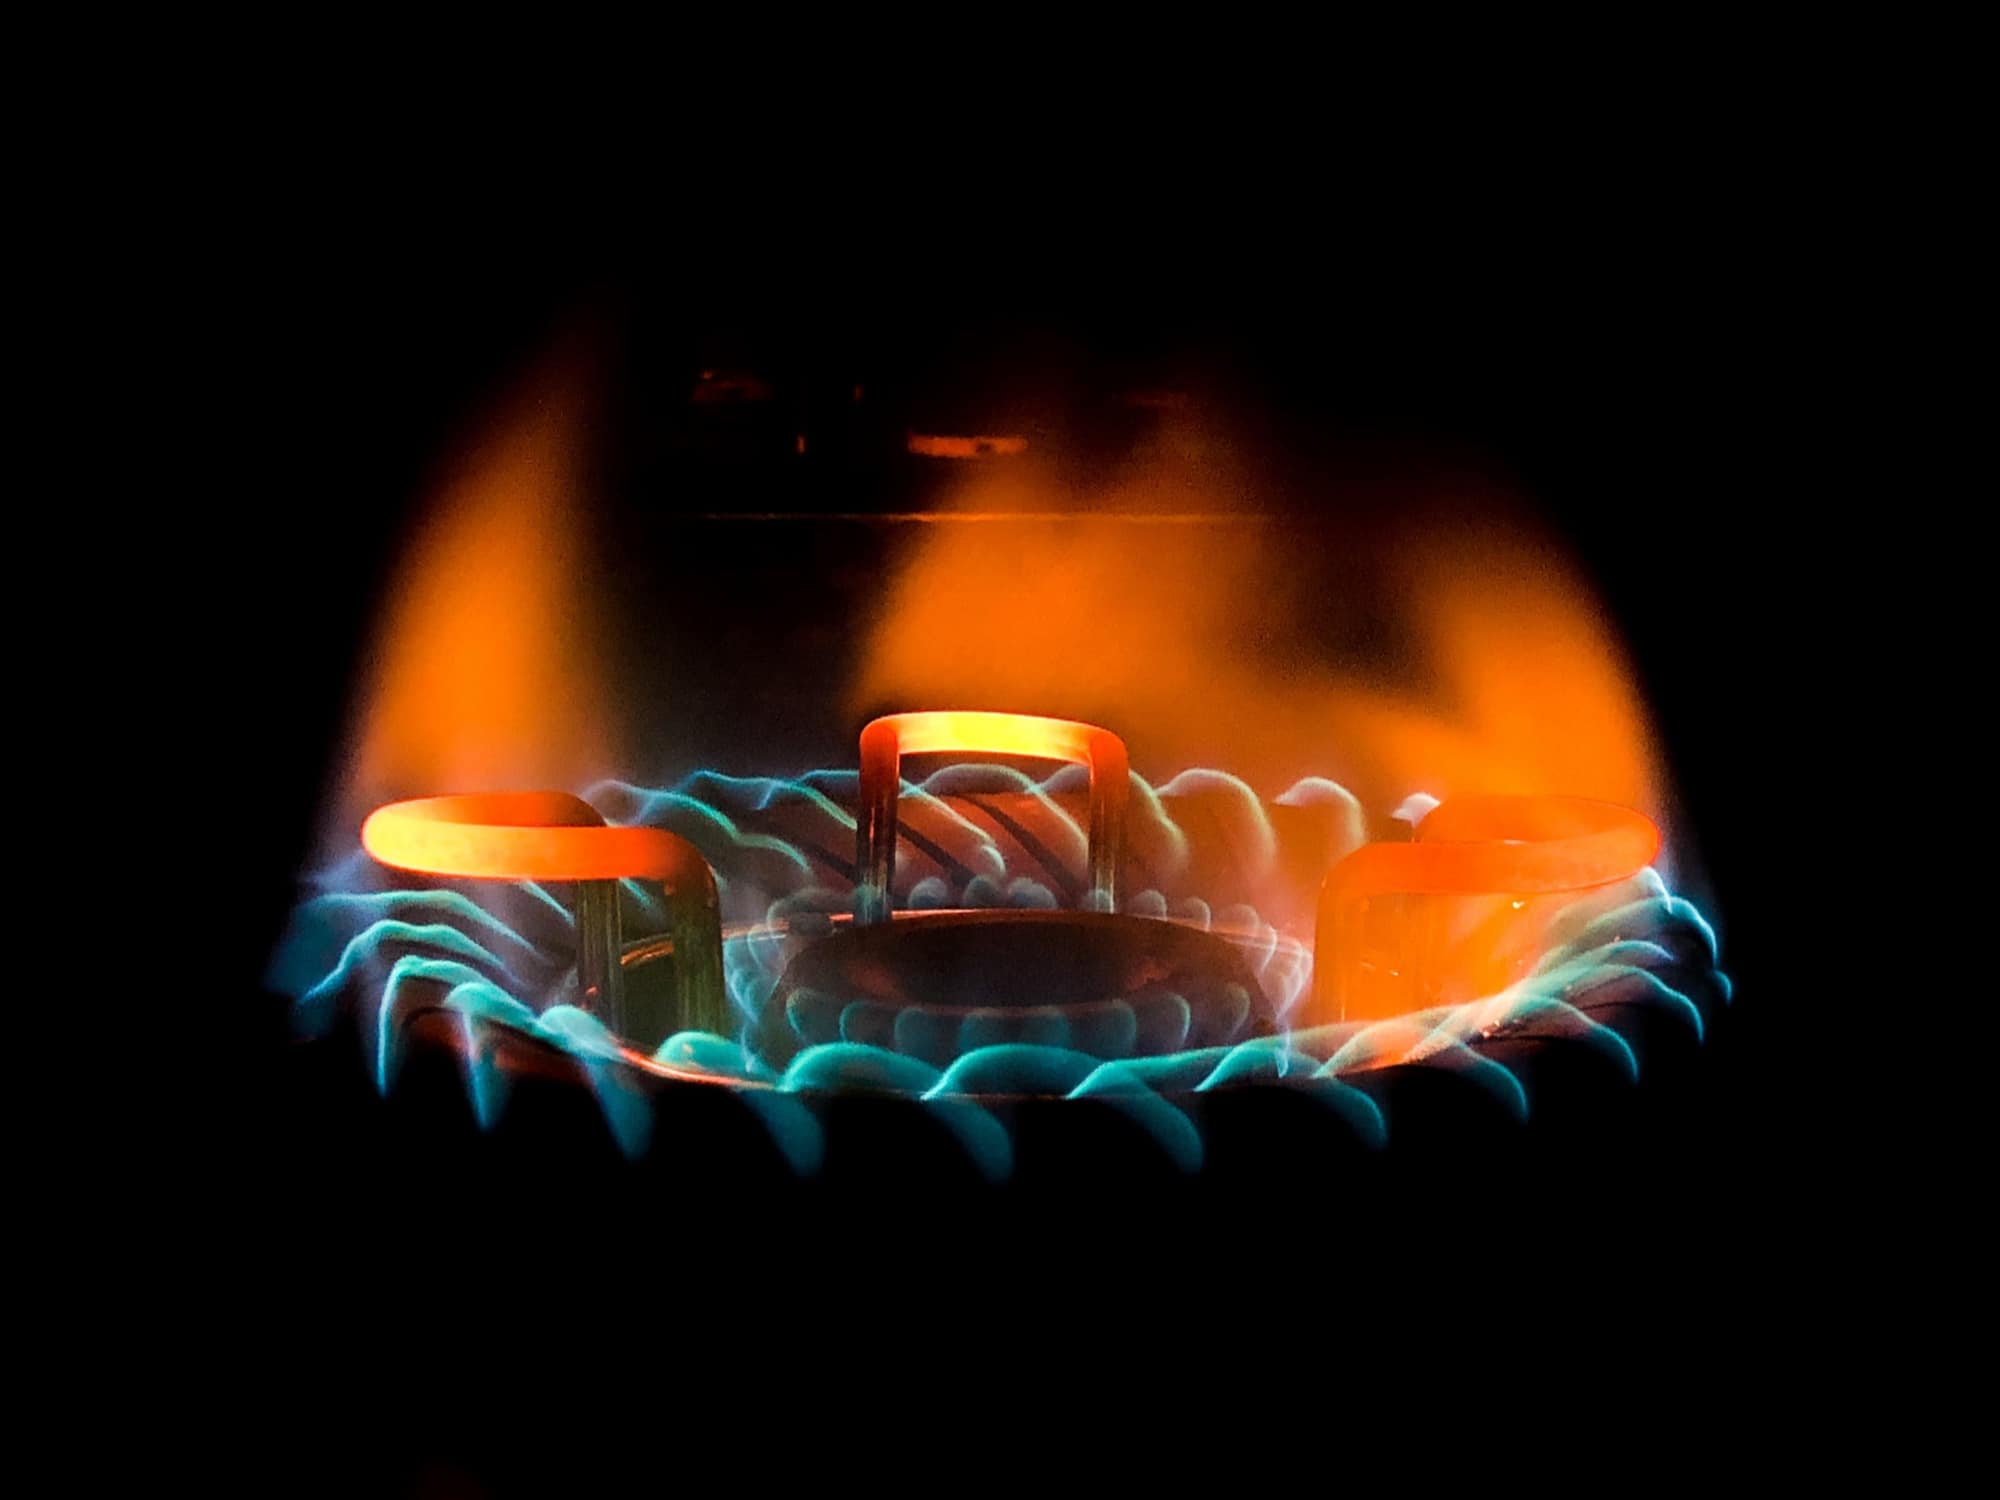 natural gas